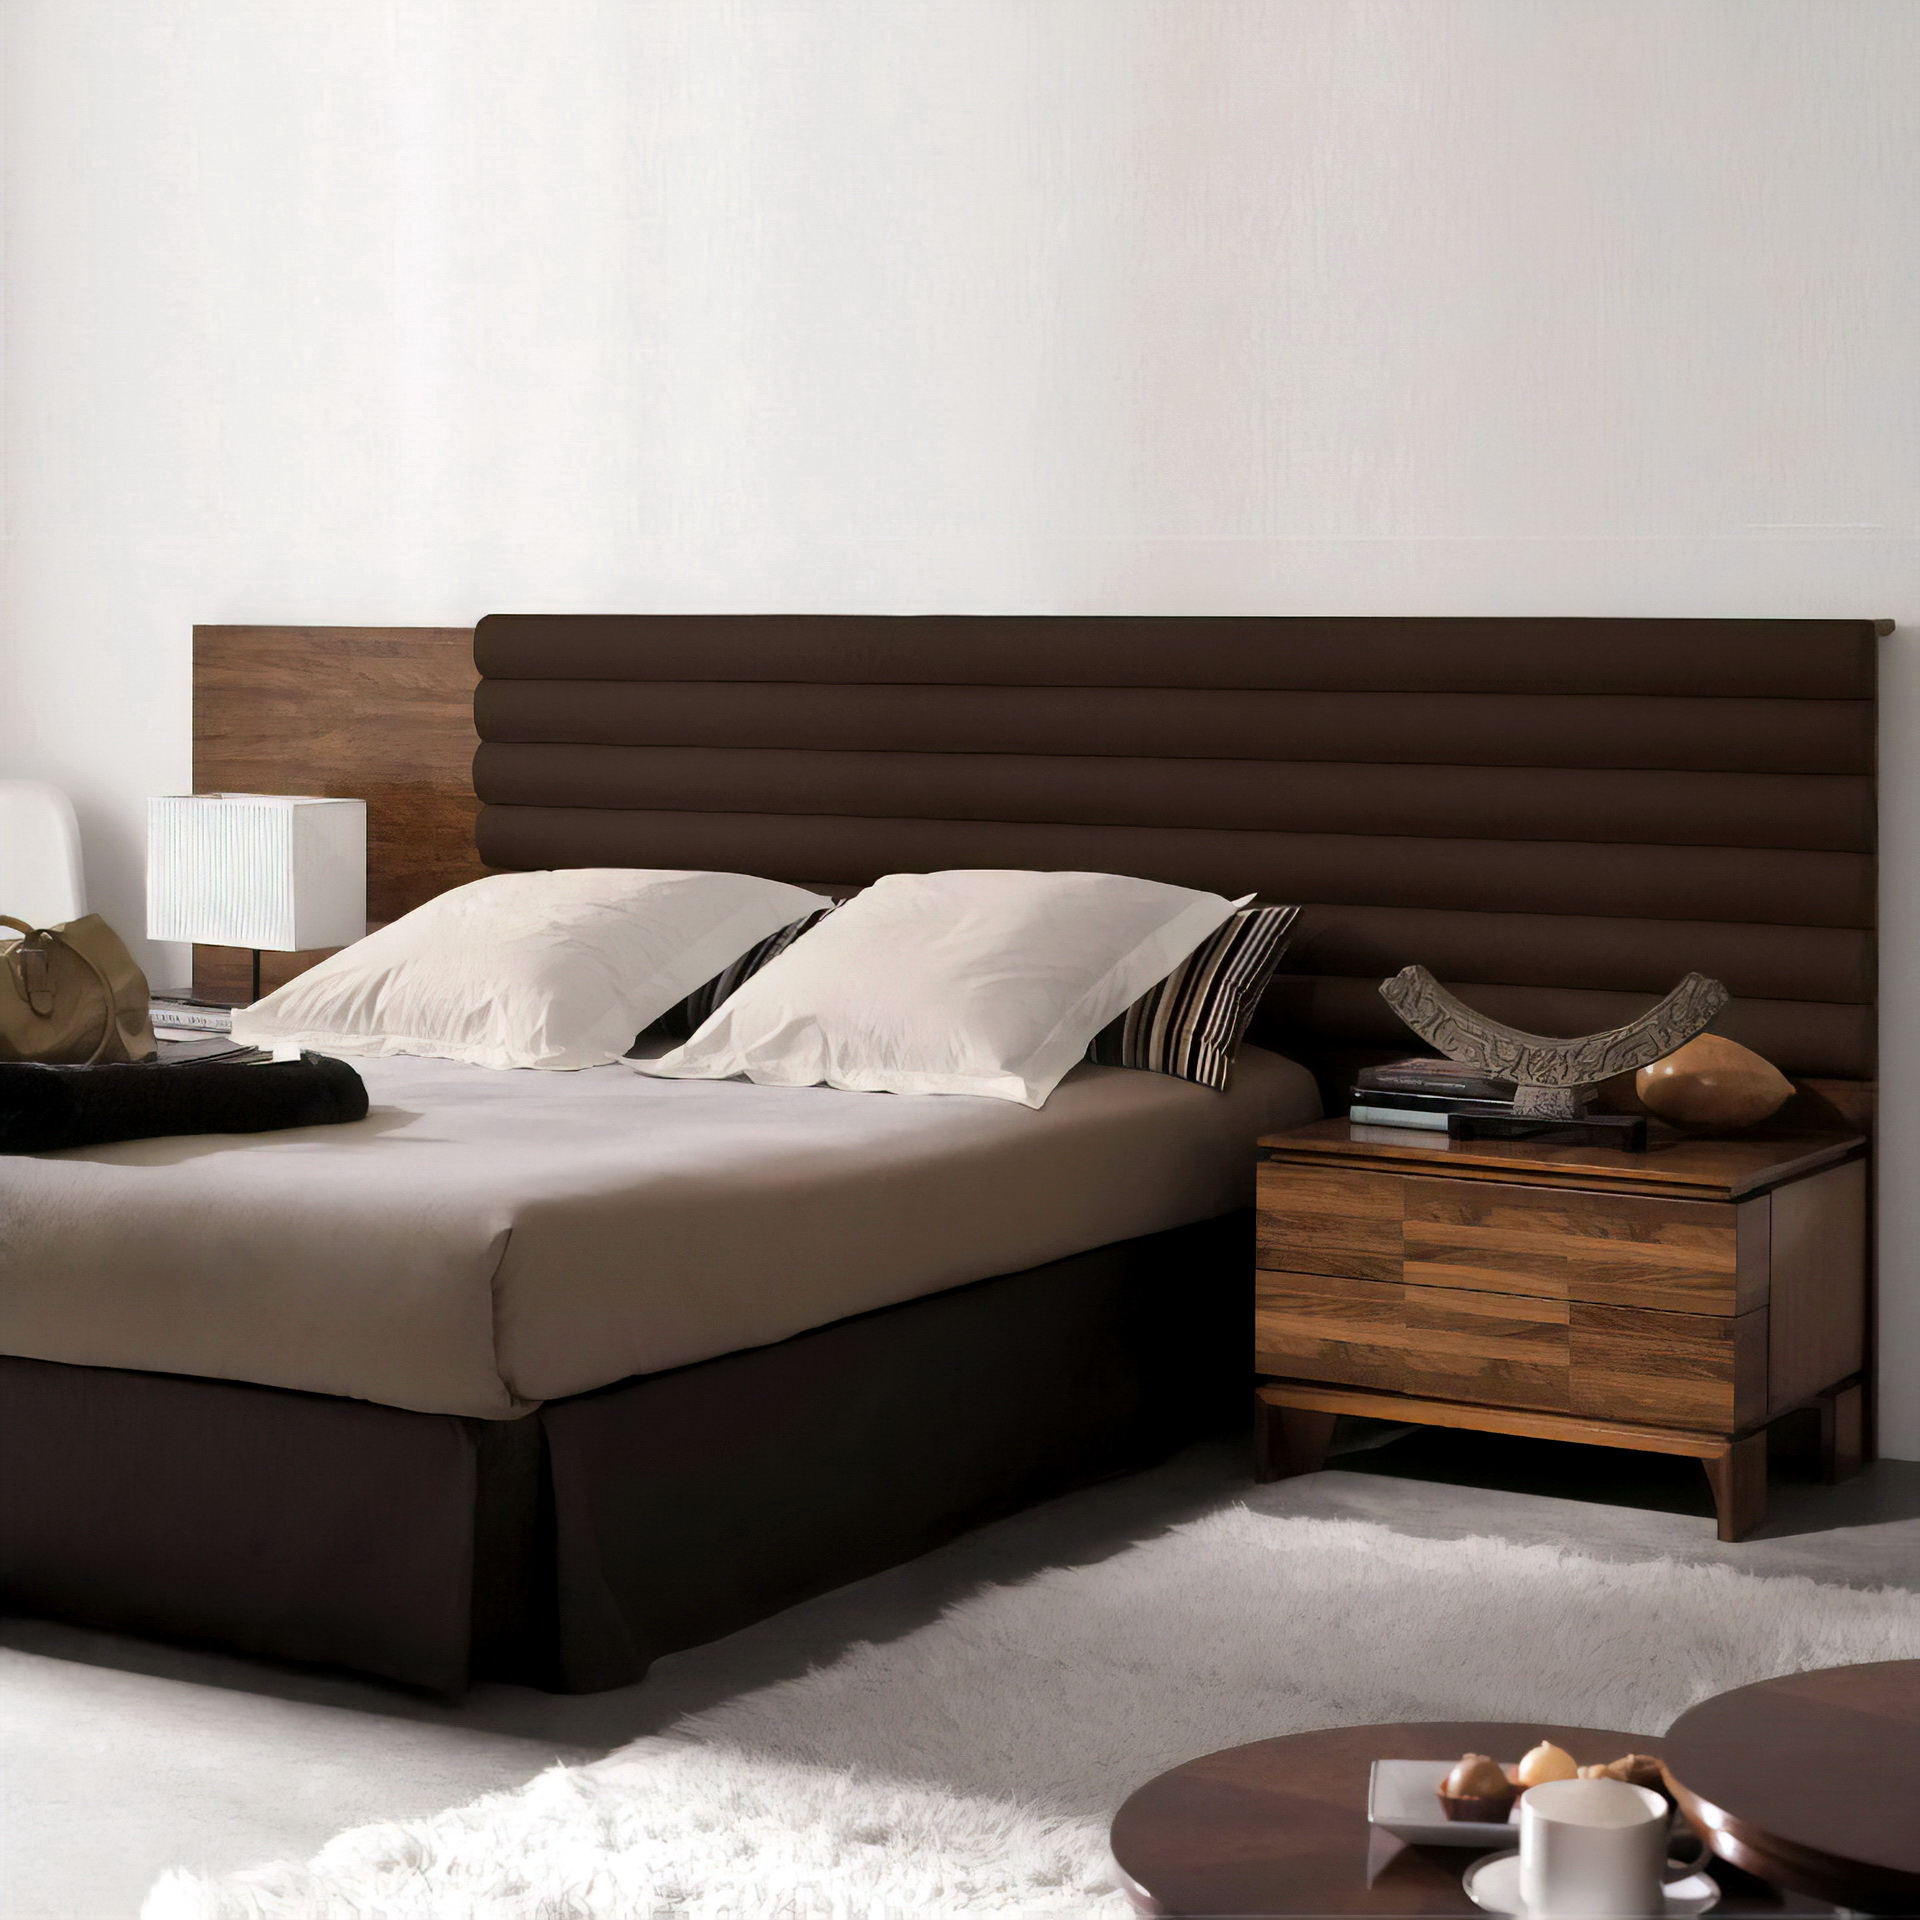 Dormitorio cama tapizada Quorum-3Q6152-4 by HURTADO en muebles antoñán® León